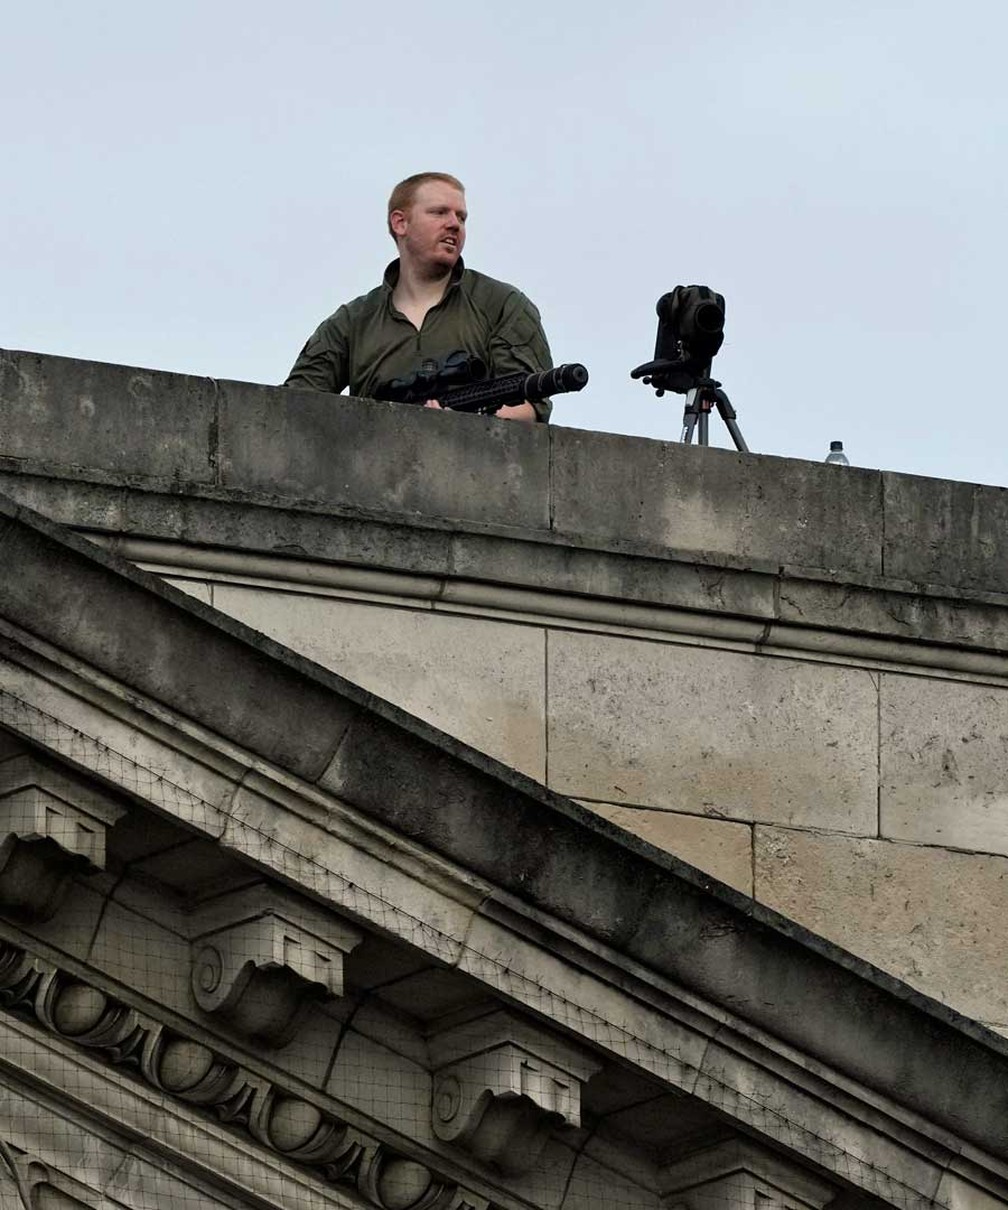 Atiradores de elite vigiam o telhado do Palácio de Buckingham antes da cerimônia de coroação do rei Charles — Foto: Frank Augstein / AP Photo